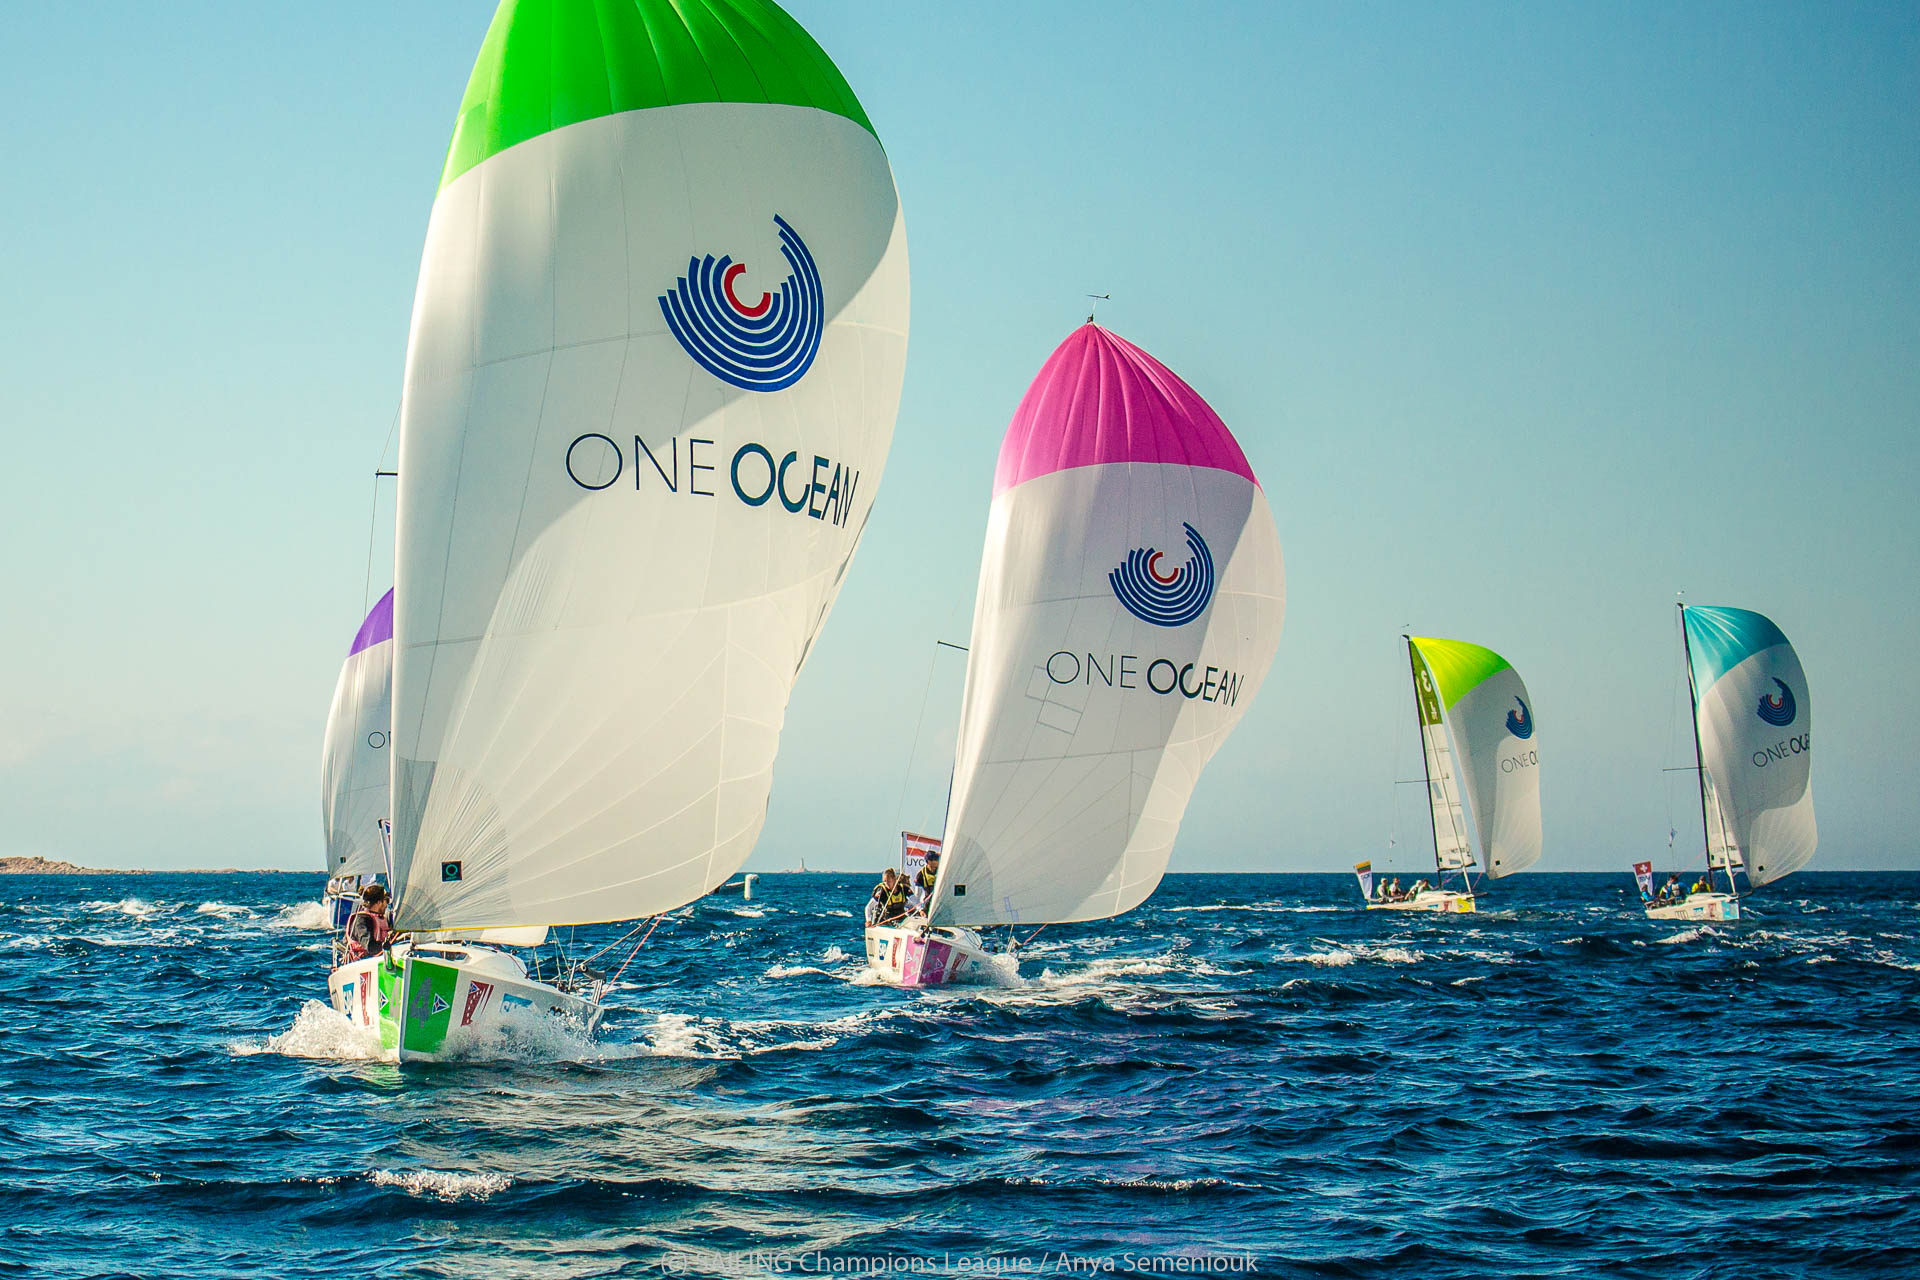 Online il video della SCL dedicato a One Ocean  - NEWS - Yacht Club Costa Smeralda